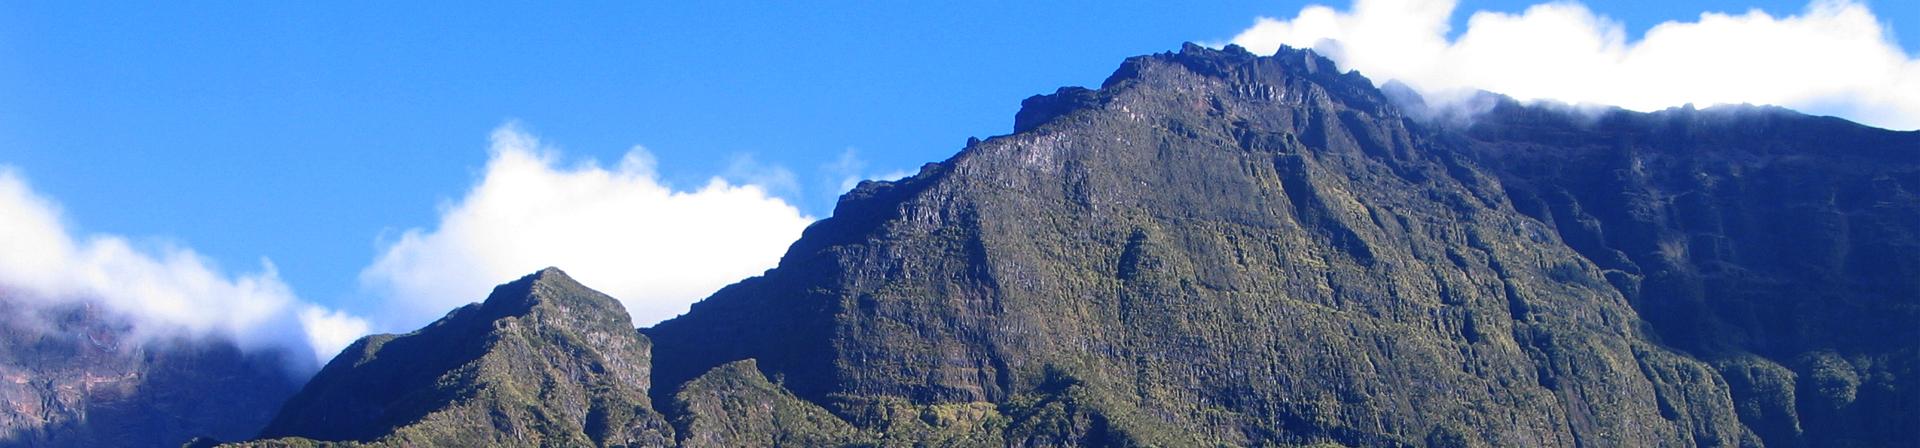 La Réunion - Im Herzen des Indischen Ozeans